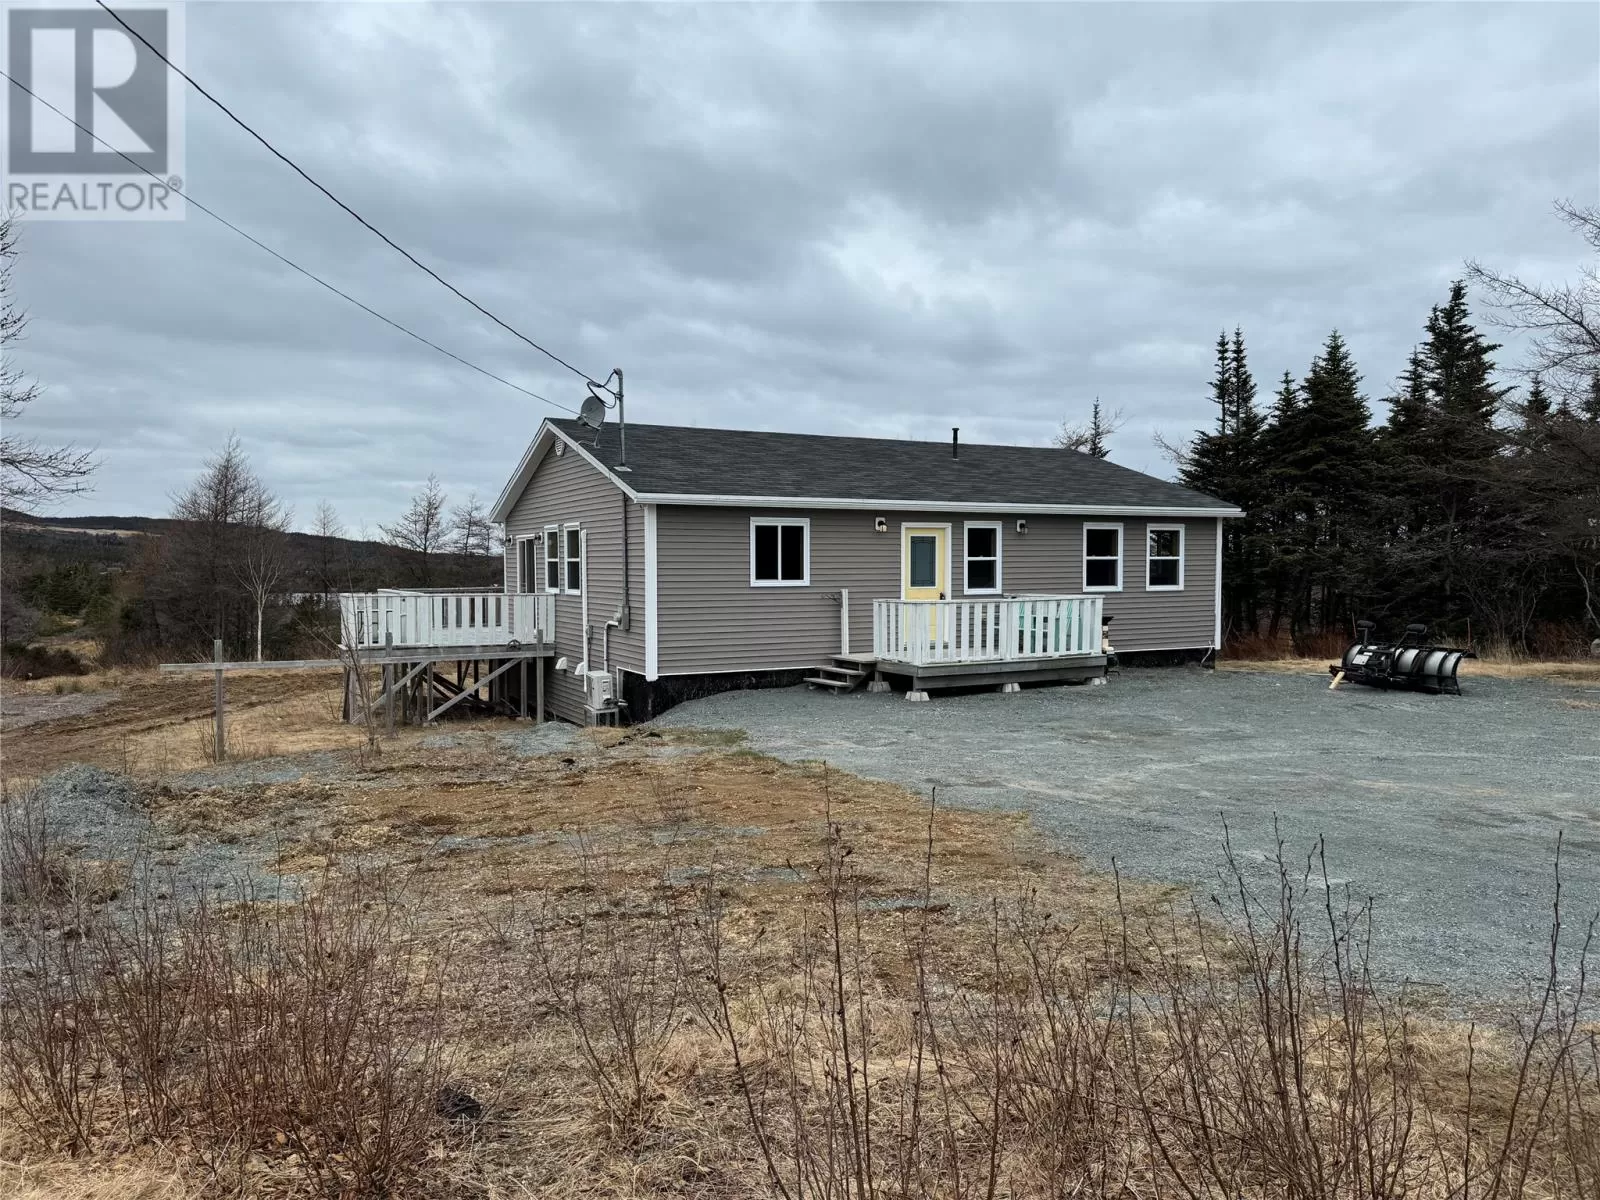 House for rent: 160 Main Road, Bellevue, Newfoundland & Labrador A0B 1B0